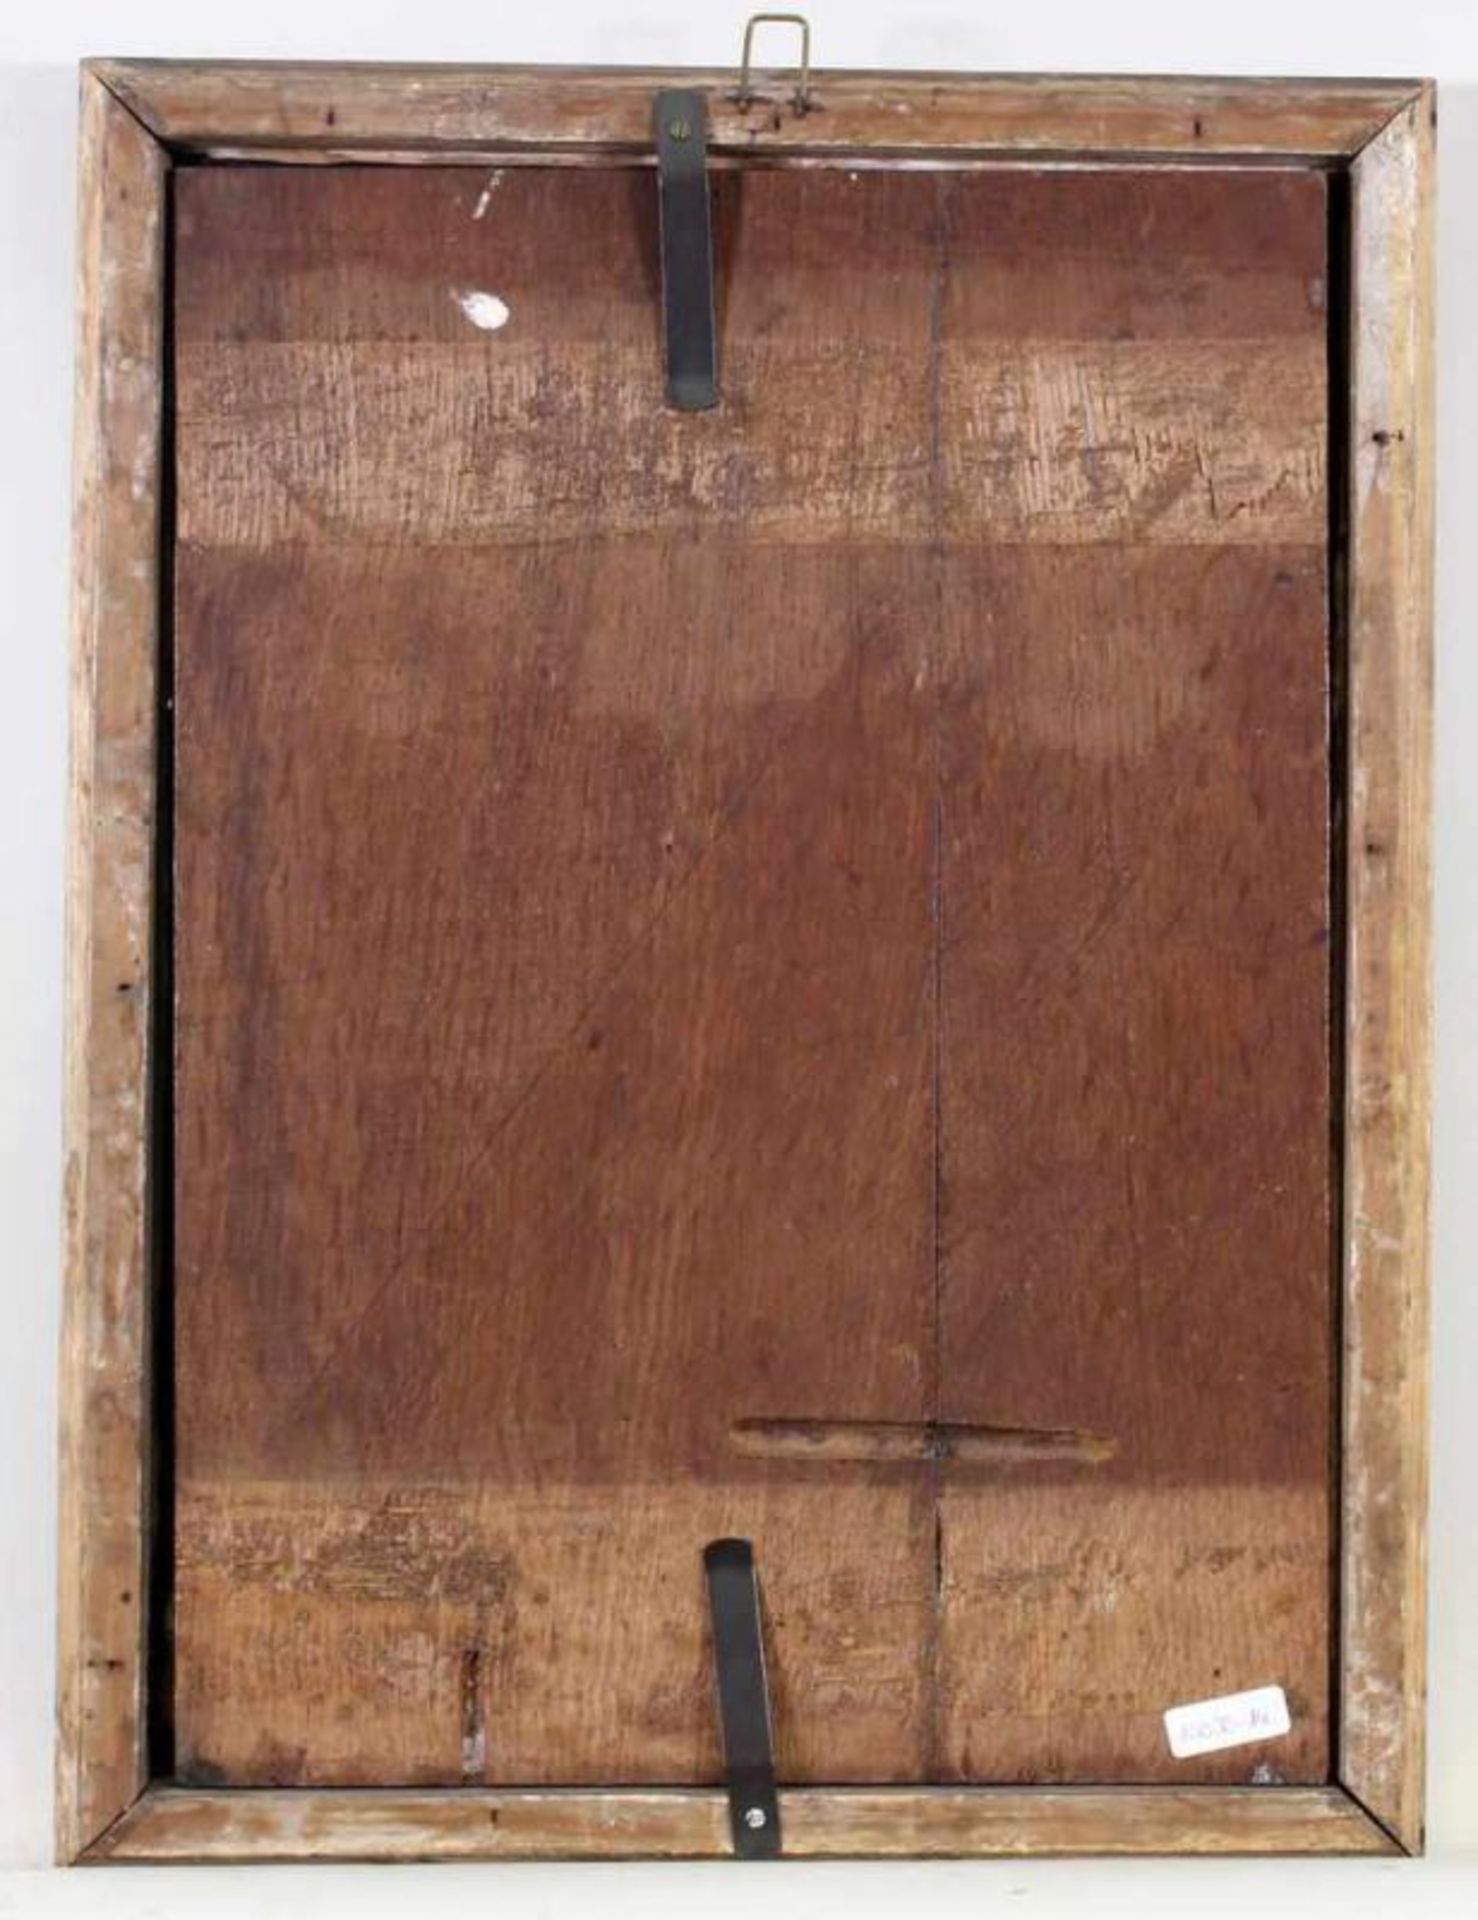 Nordfrankreich (Ende 15. Jh.) wohl, "Betende Stifterfigur", Öltempera auf Holz, 40 x 28.5 cm, - Image 4 of 4